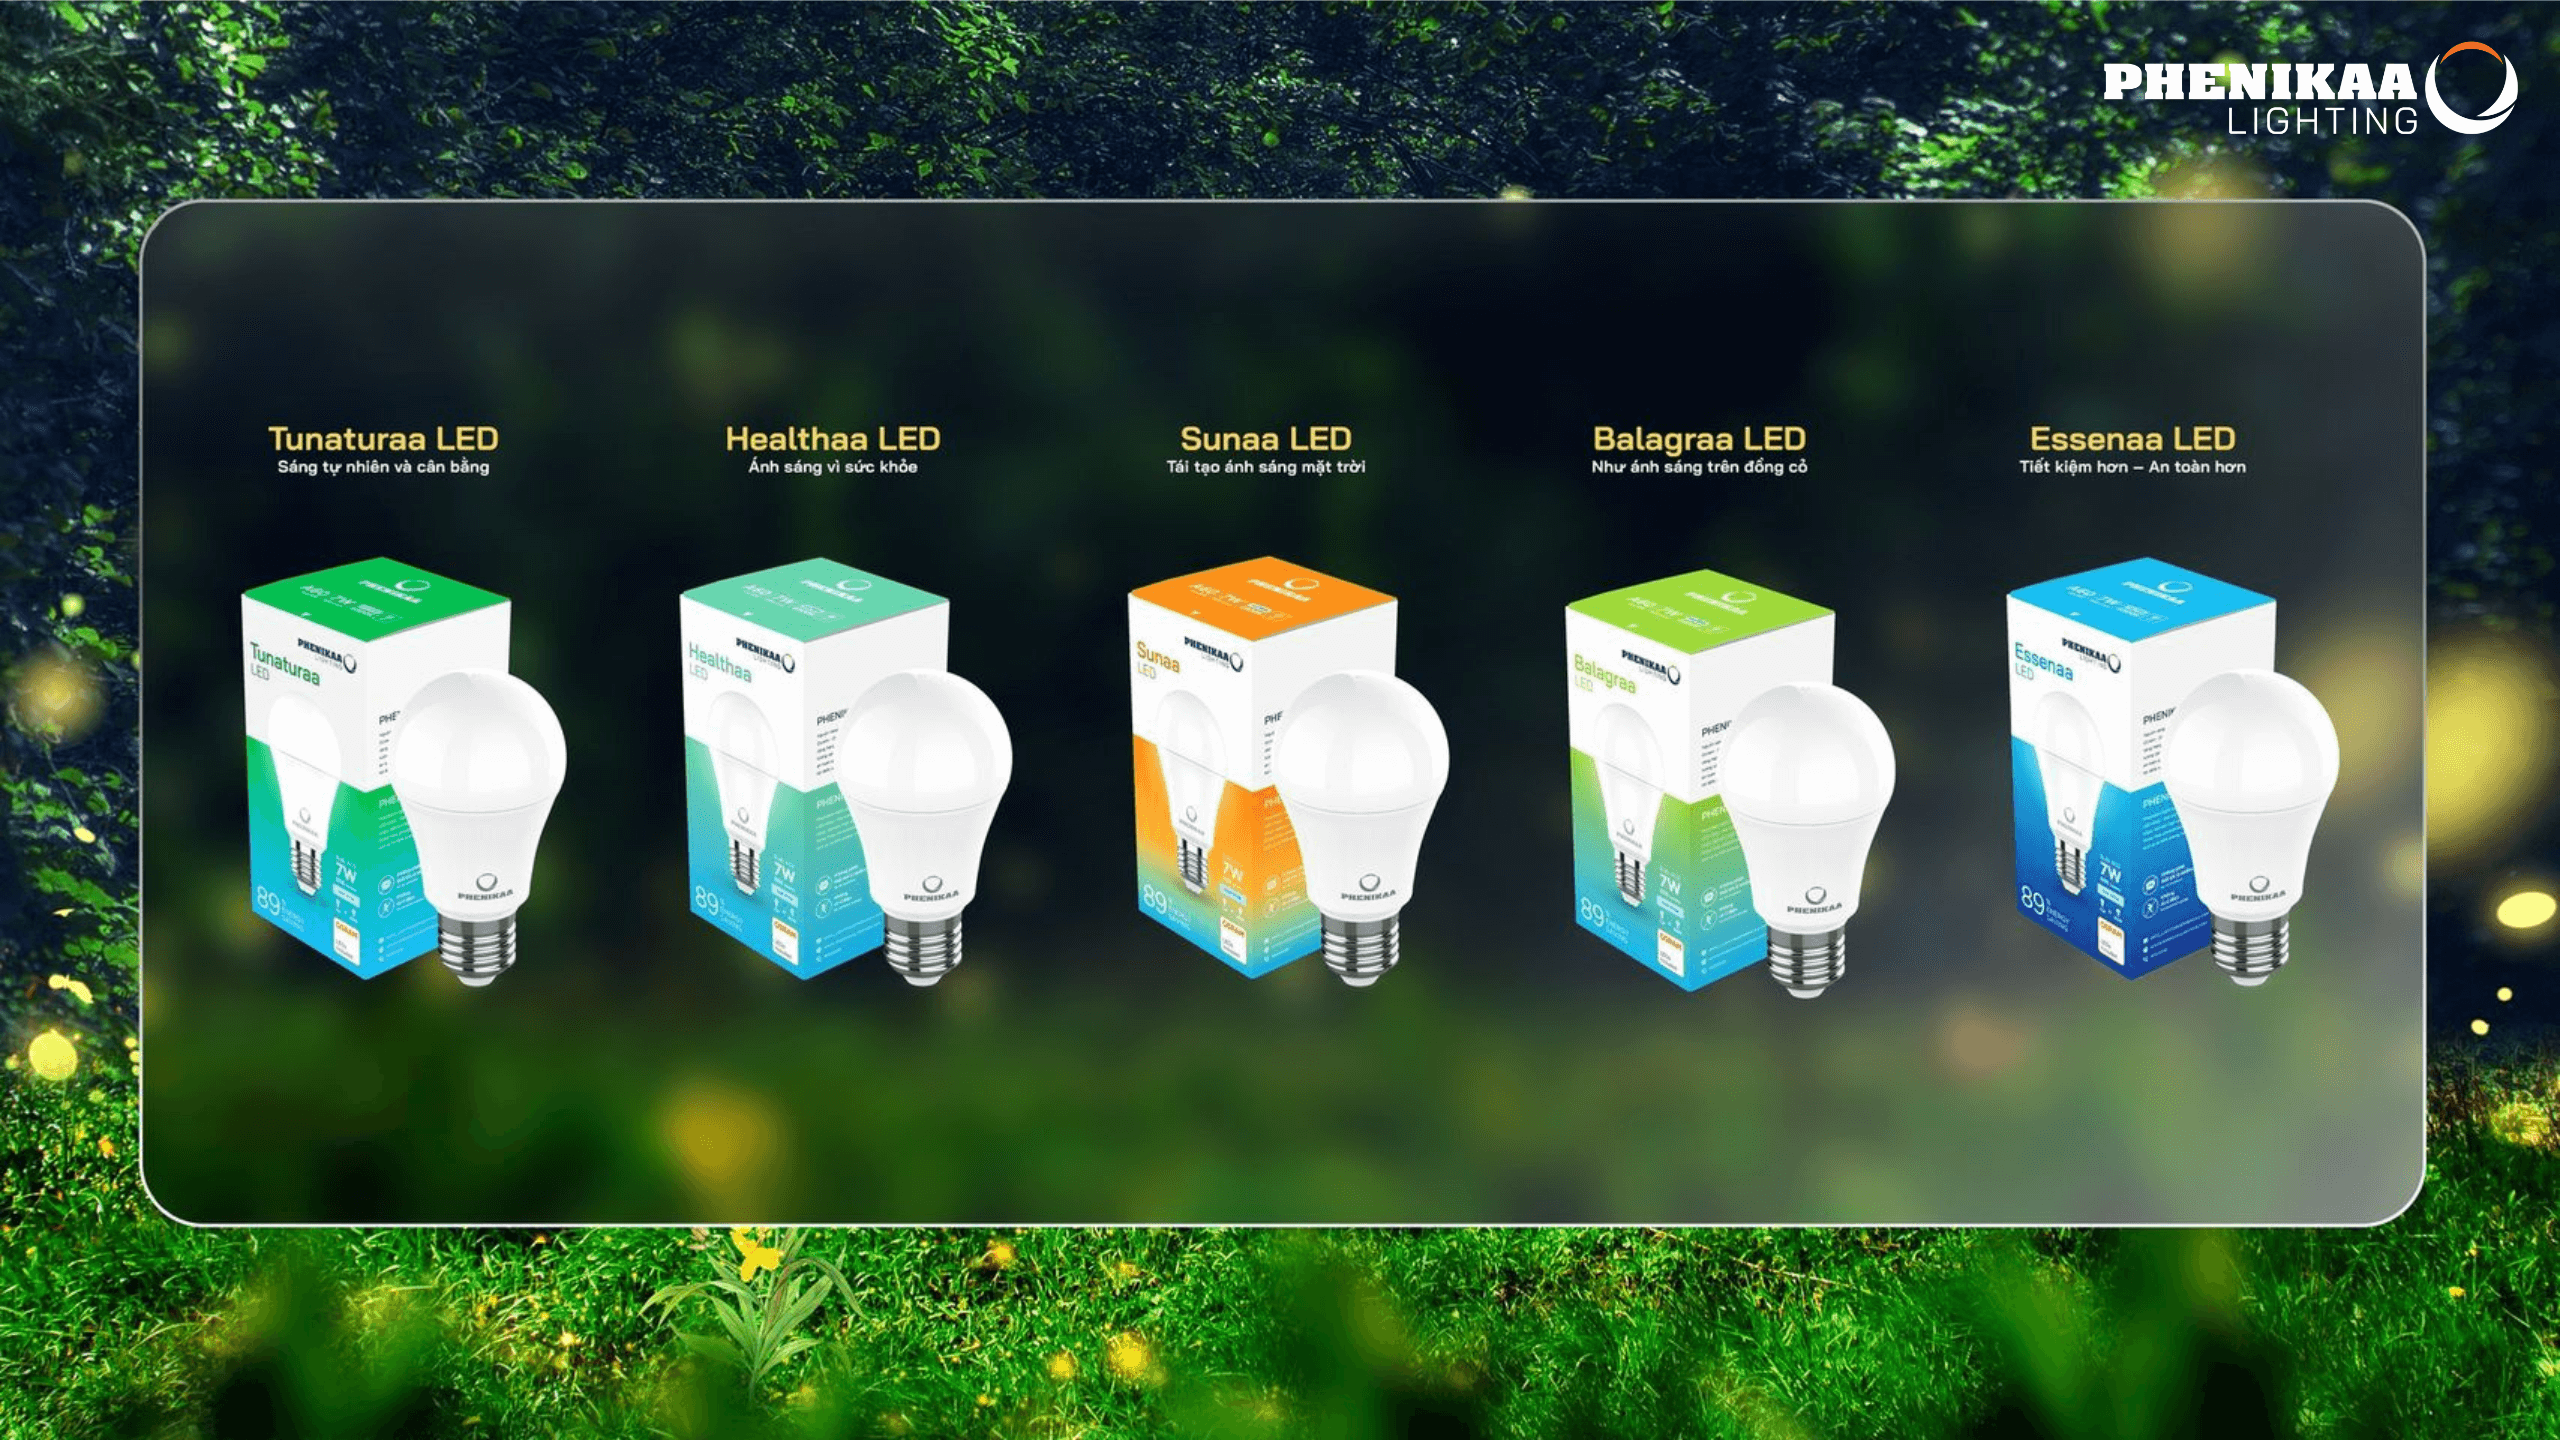 Phenikaa Lighting -  “Dấu ấn” khác biệt trong kỷ nguyên chiếu sáng LED thế hệ mới